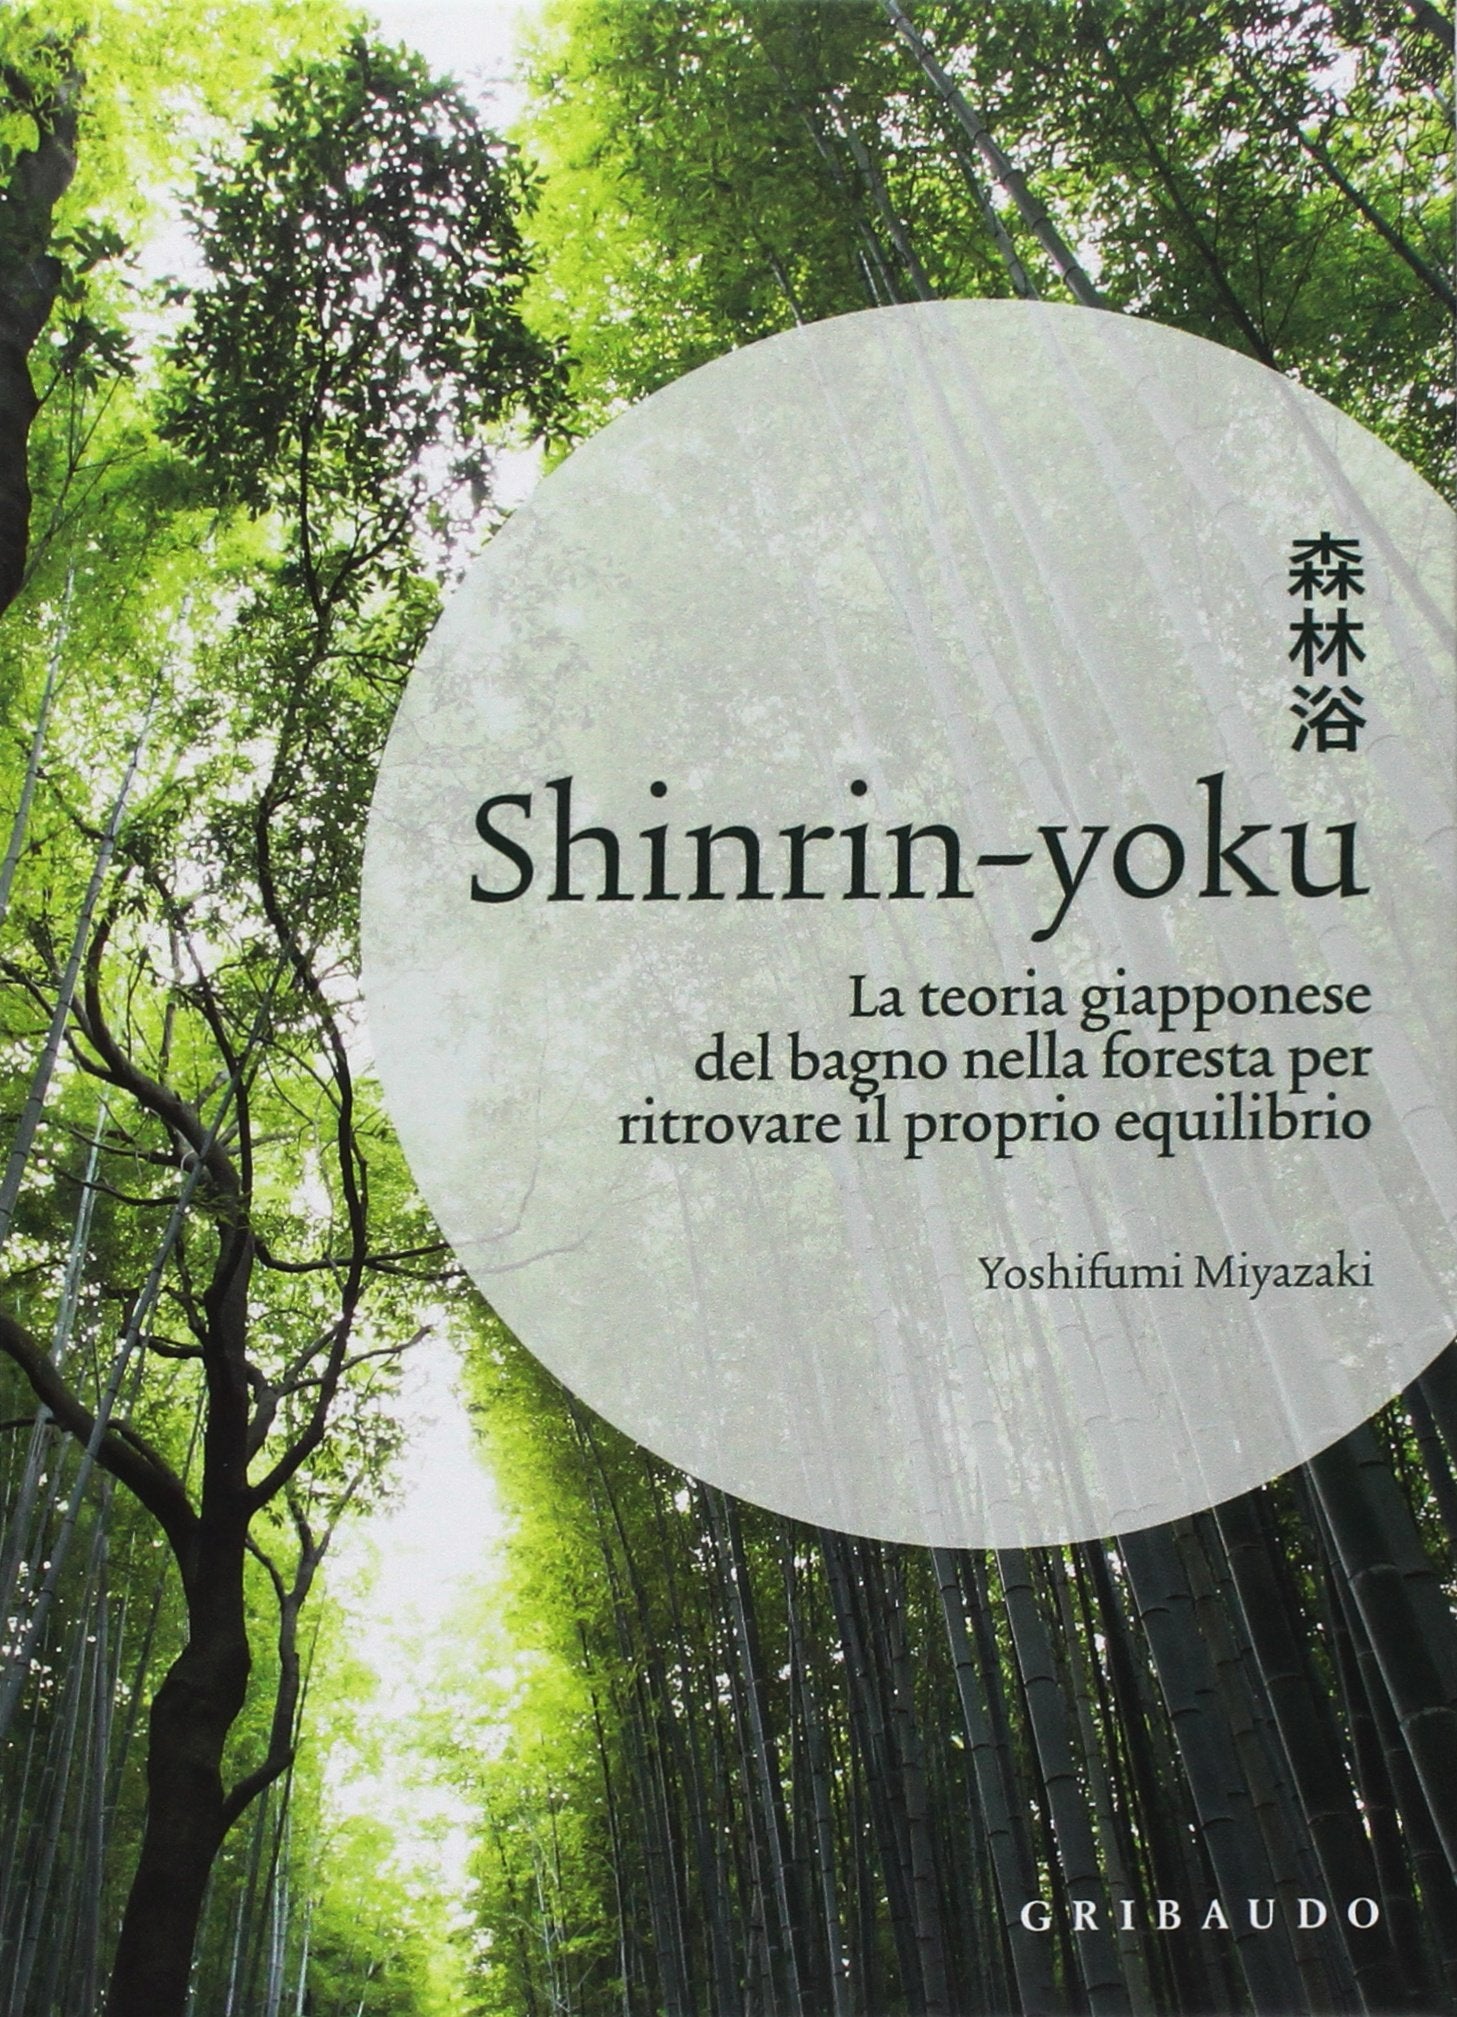 SHINRIN-YOKU